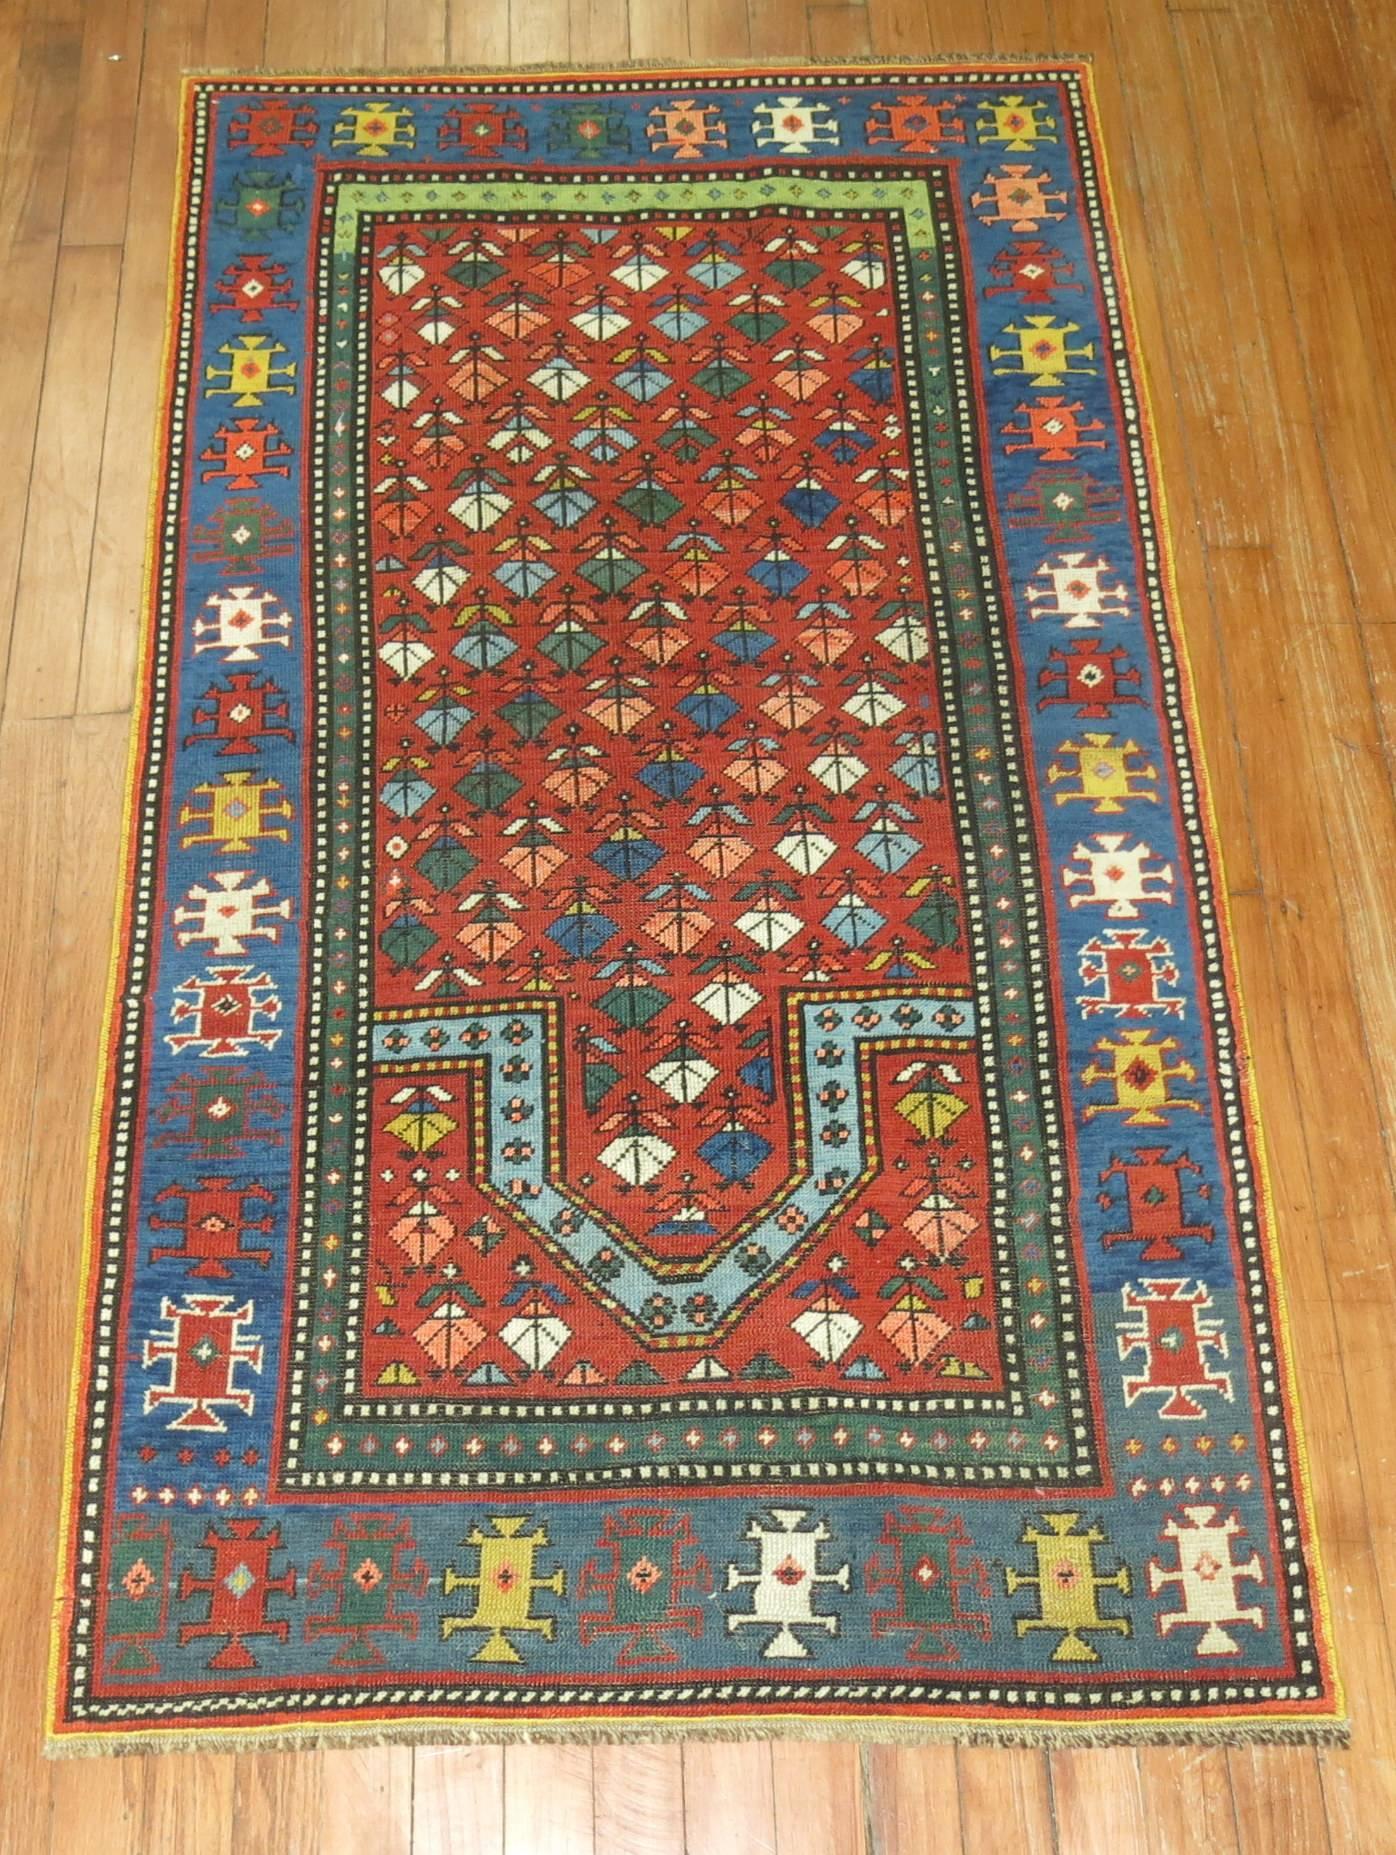 Ein bunter kasachischer Gebetsteppich aus dem frühen 20. Jahrhundert.

Die besten antiken Kazak-Teppiche werden seit langem von Kennern kaukasischer Teppiche geschätzt. Der Hauptgrund dafür sind ihre unglaublich gesättigten, natürlich gefärbten